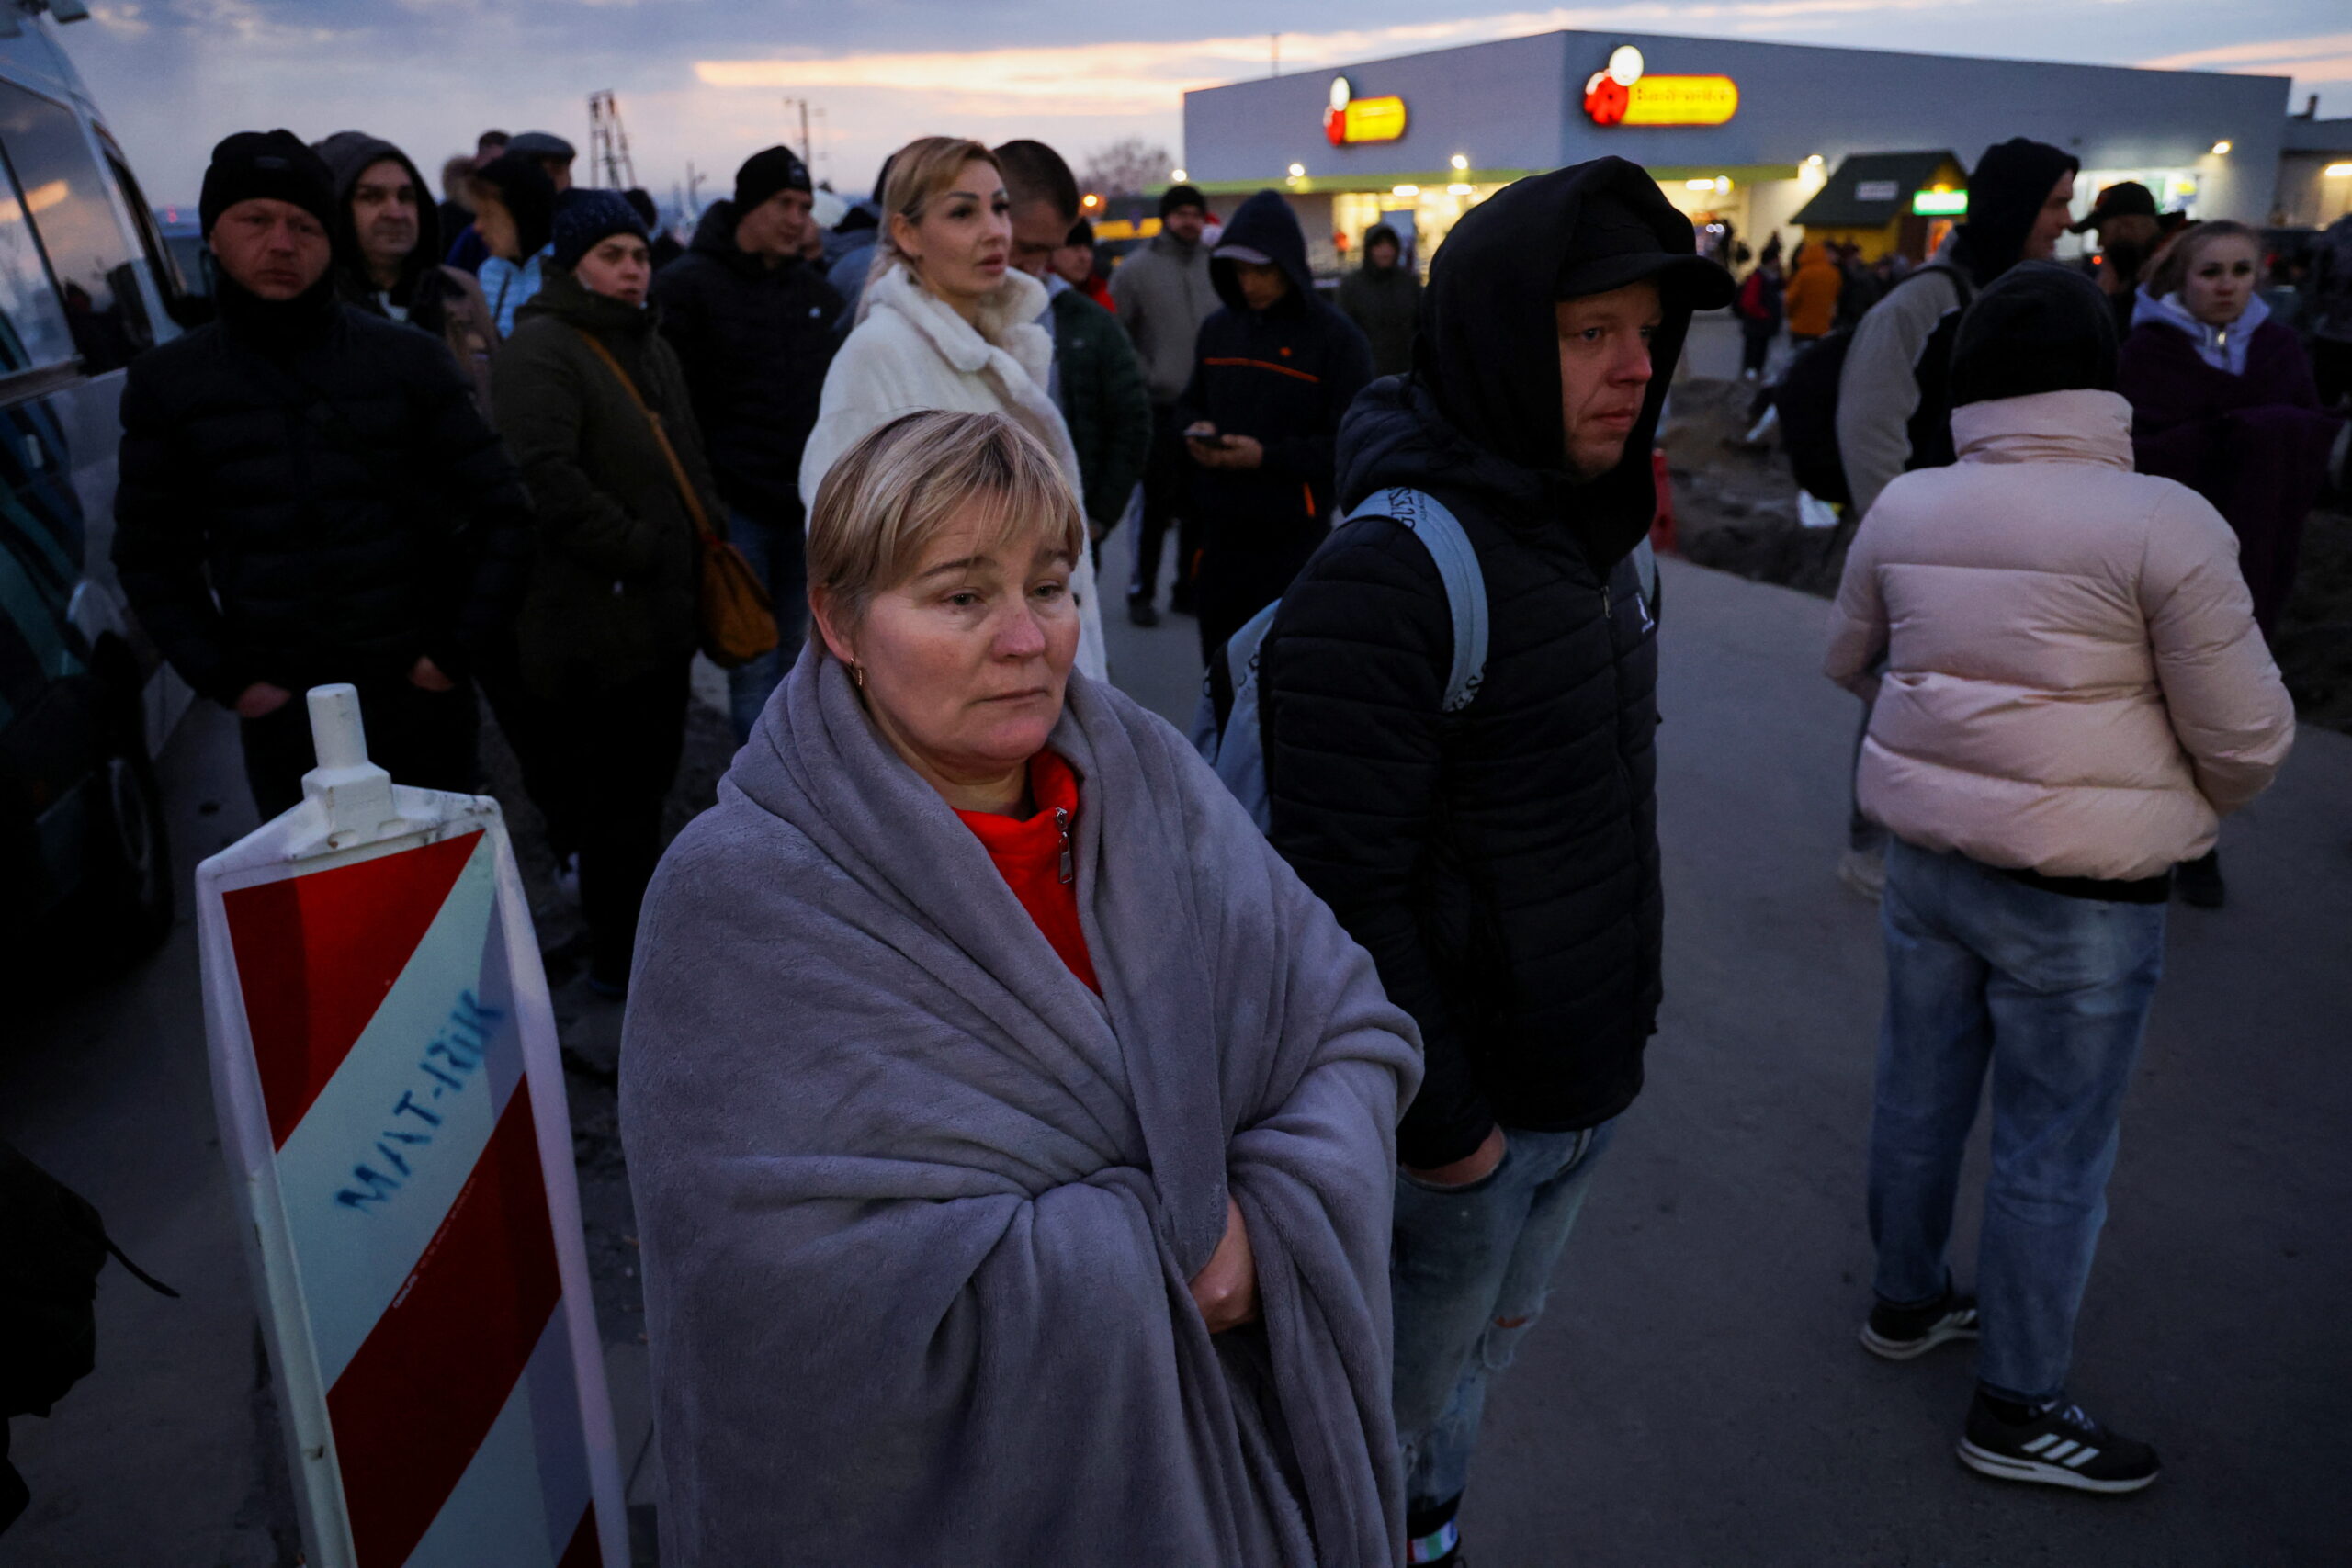 รัสเซีย-ยูเครน: อพยพคนไทยแล้ว 47 คน ตกค้าง 43 คน ประยุทธ์ เร่งช่วยเหลือ